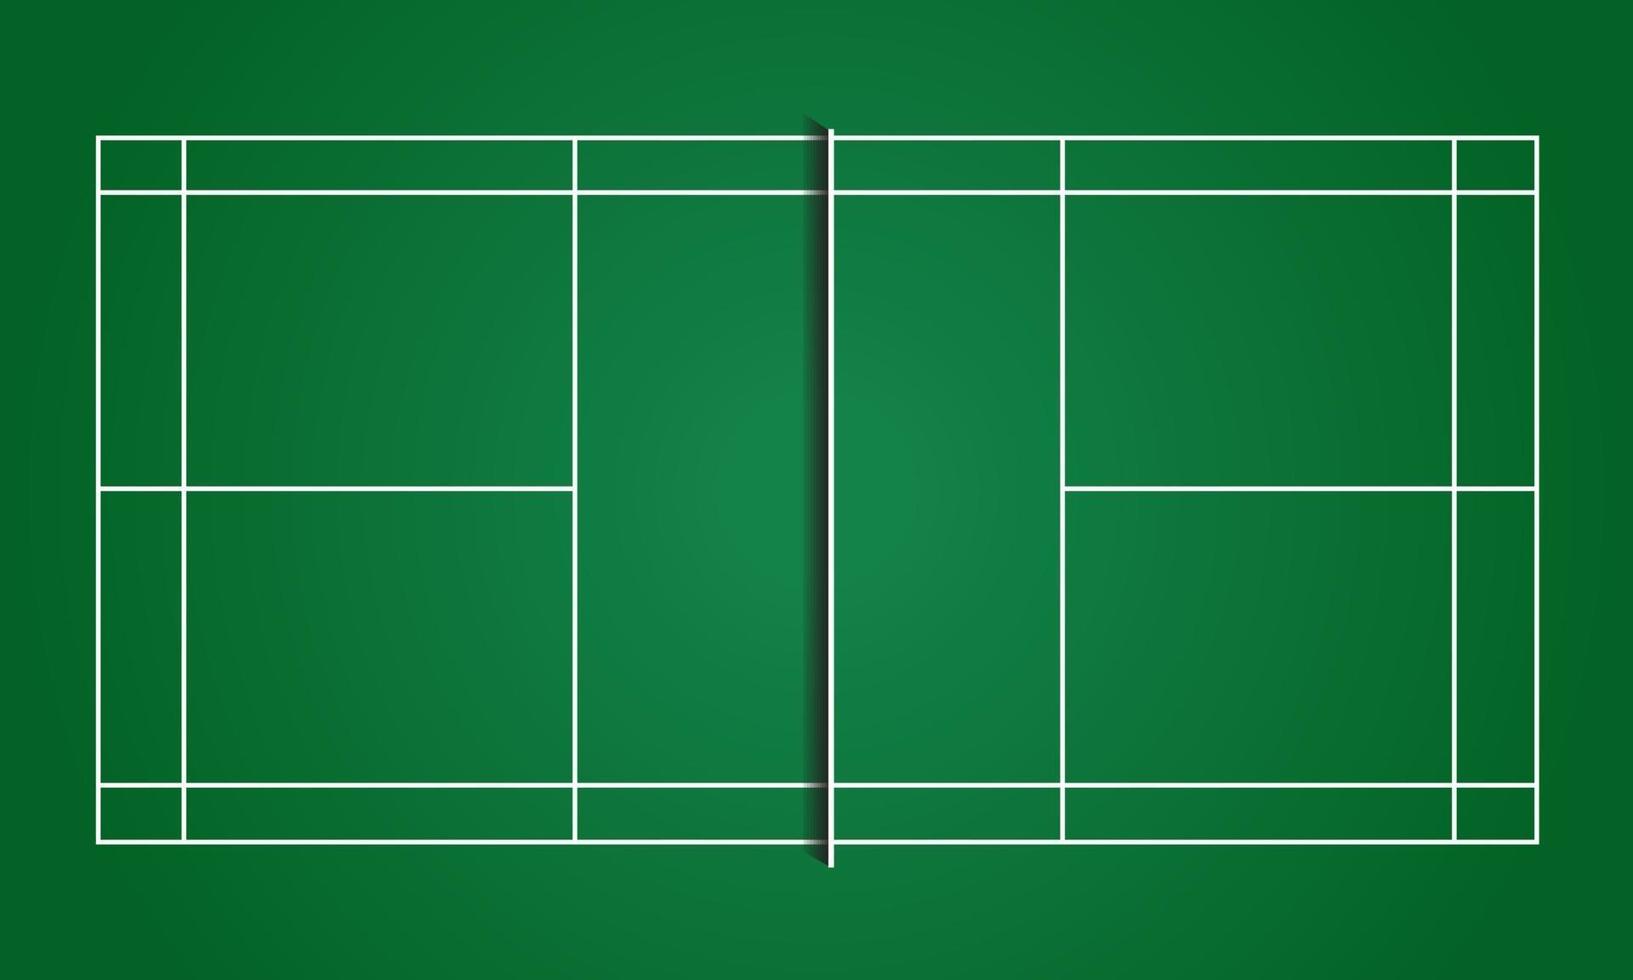 Badminton field indoor green carpet floor vector